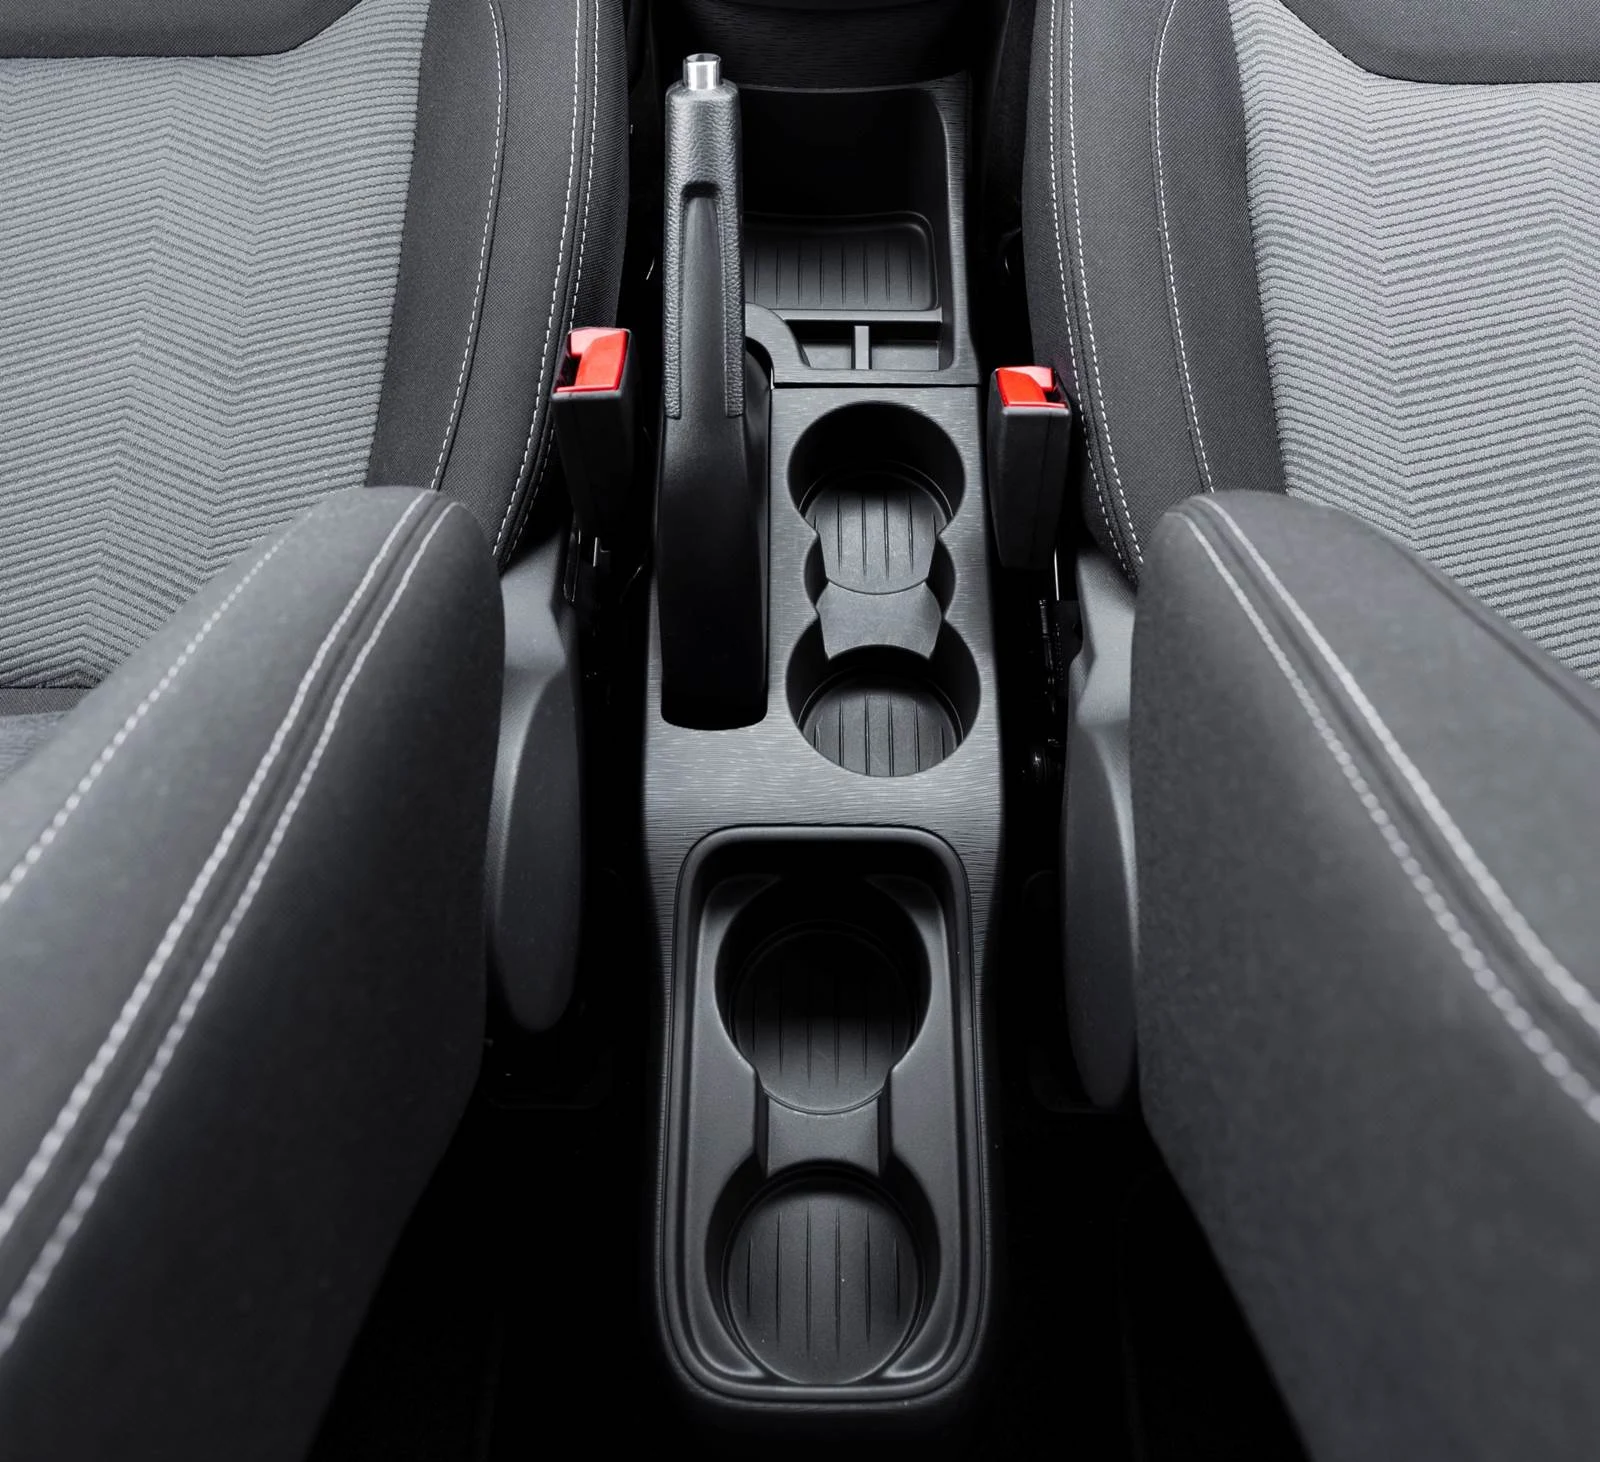 Novo Ford Ka 2015  - interior - porta-objetos central